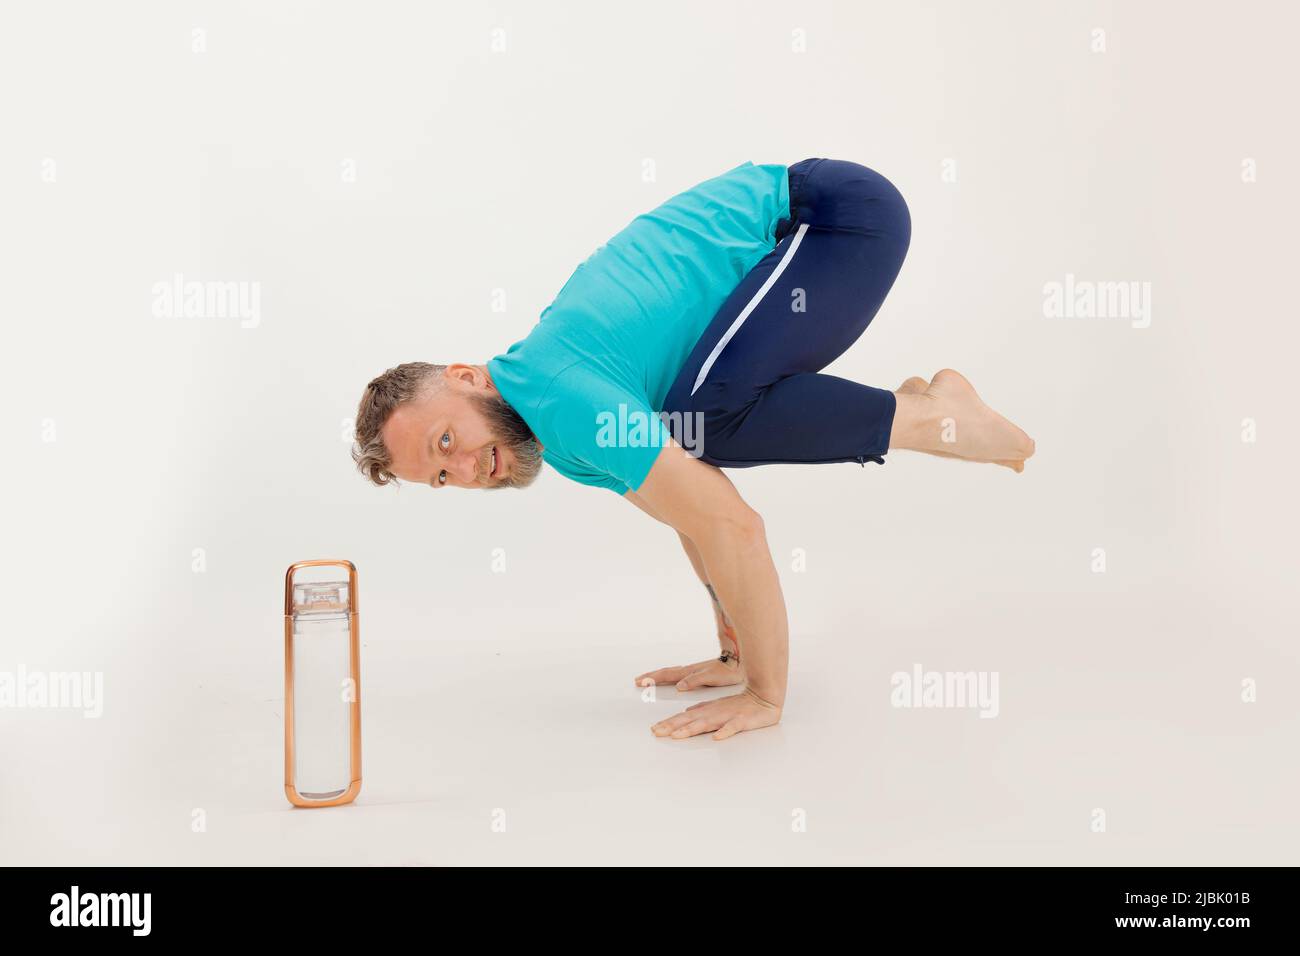 Joven atleta de pie en soporte acrobático con piernas dobladas cerca de una botella de agua, fondo blanco. Mantenerse en forma por el ejercicio en el gimnasio Foto de stock